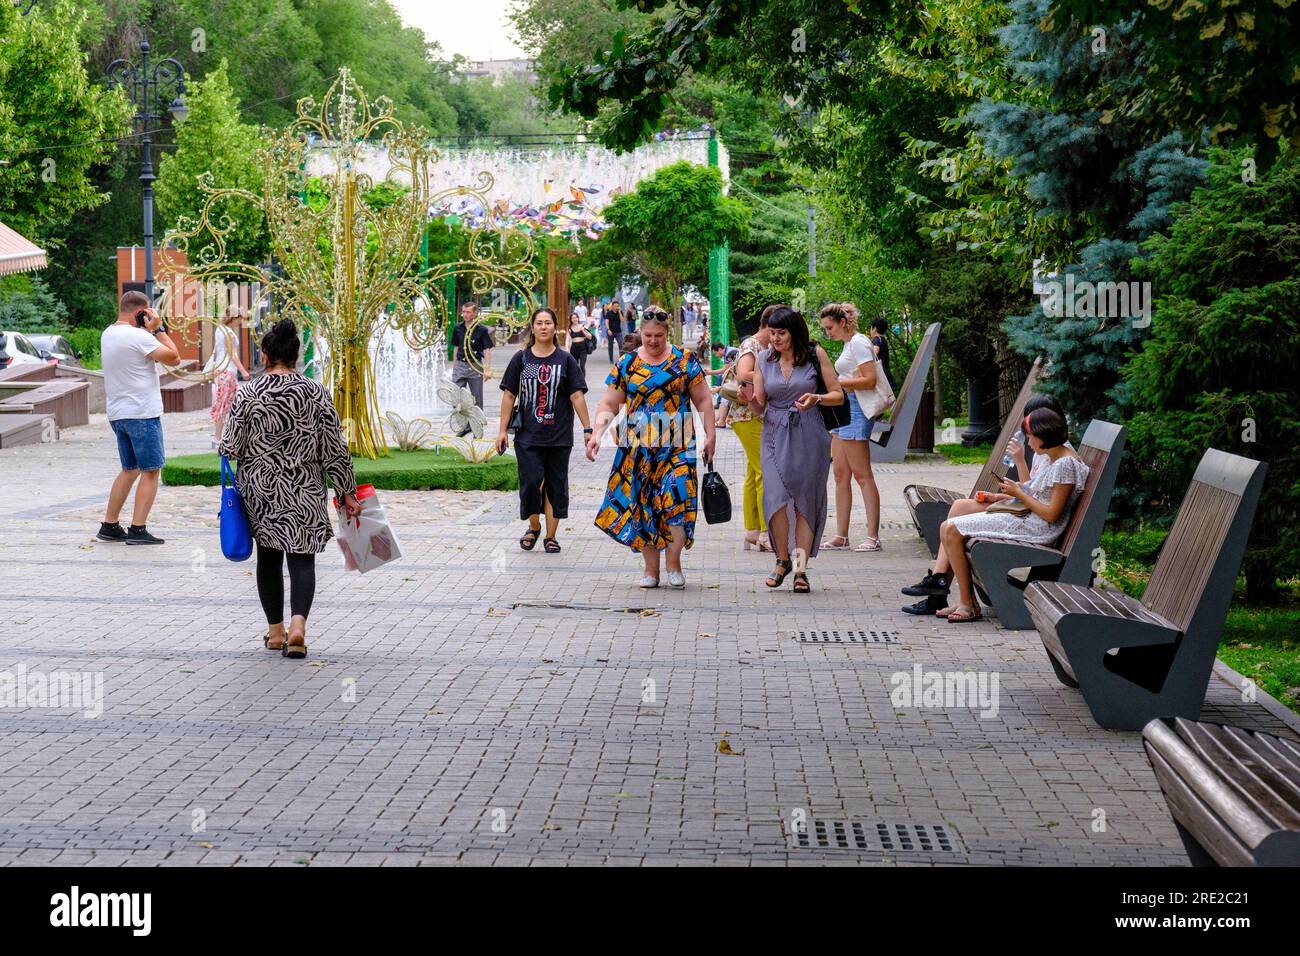 Kasachstan, Almaty. Menschen auf der Panfilov Promenade, einem Fußgängerweg. Stockfoto